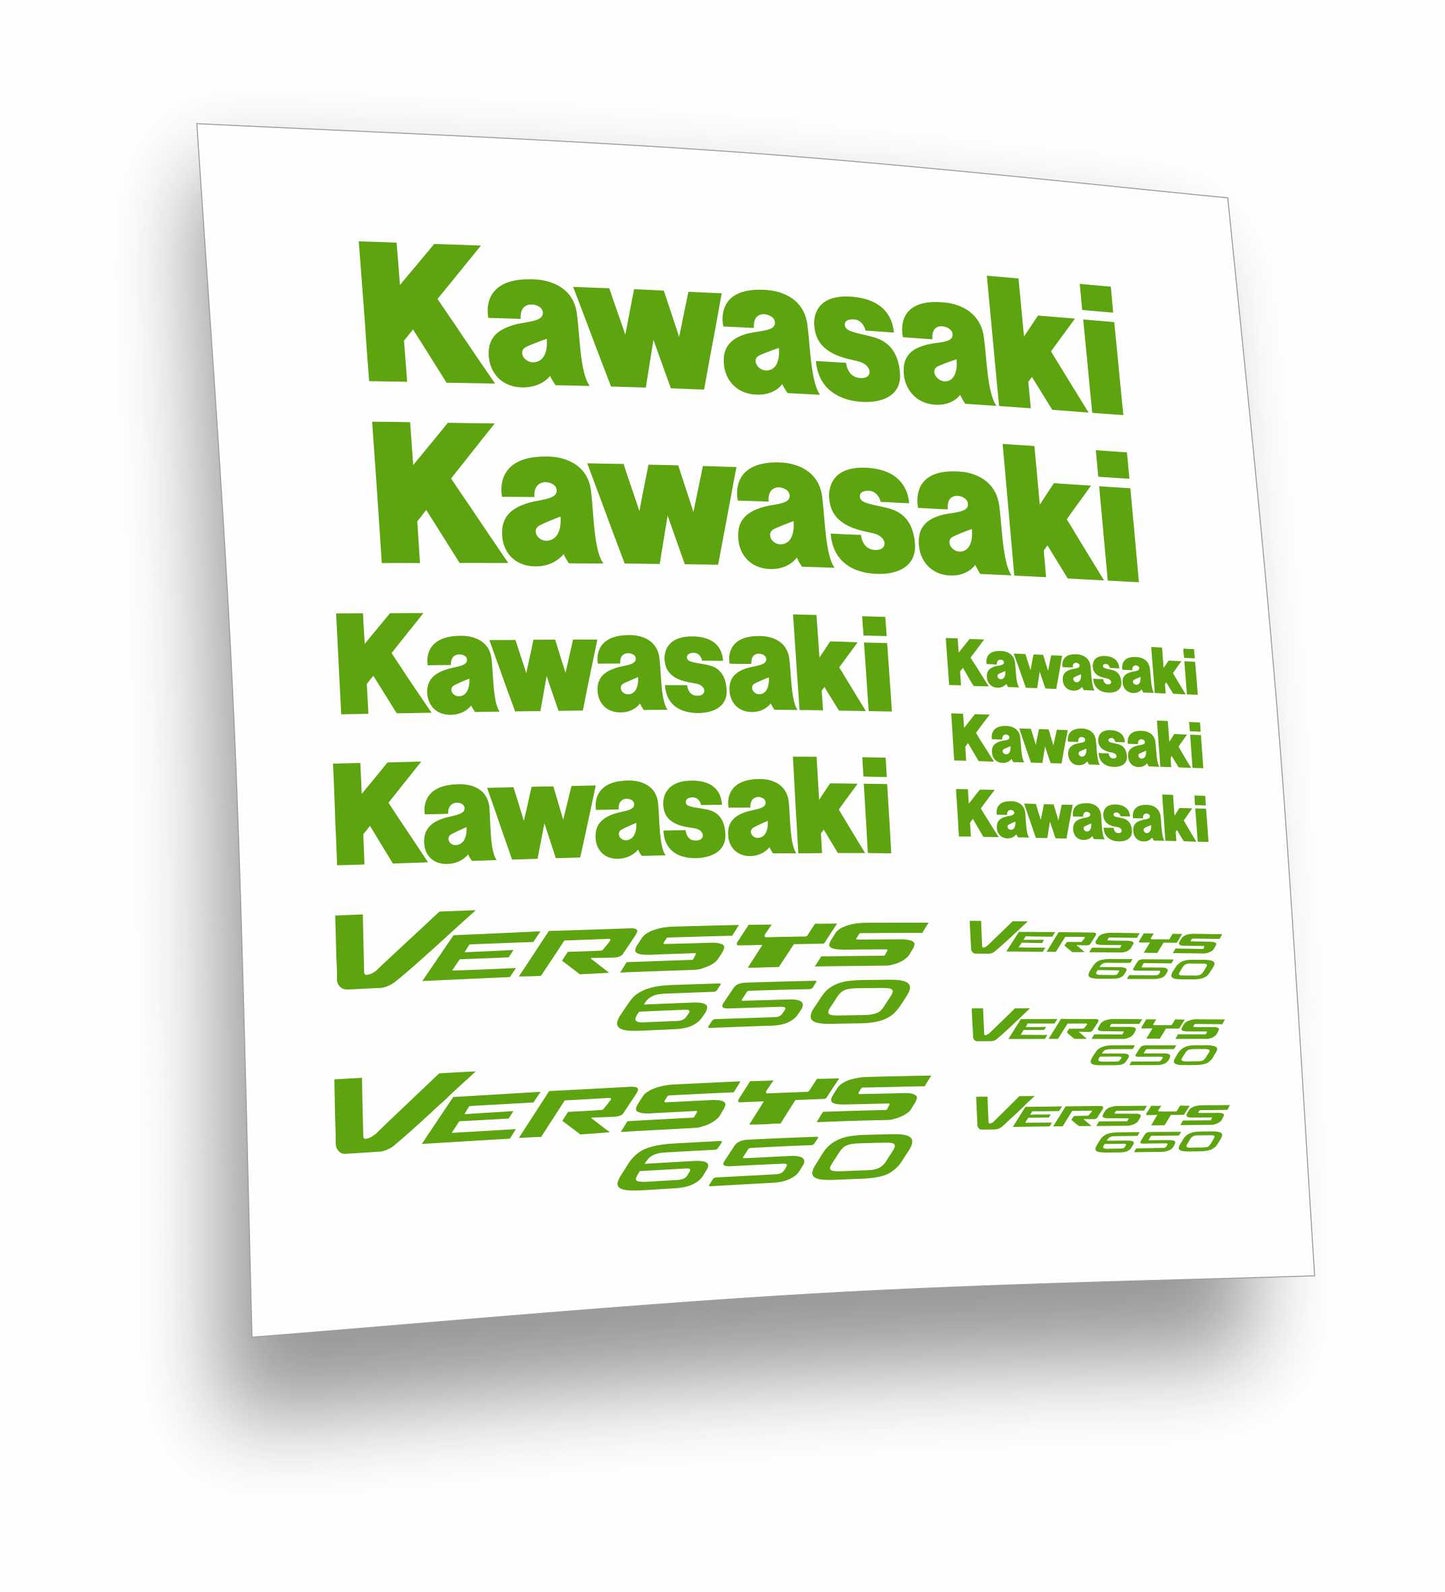 adesivi stickers Kawasaki Versis 650 – L'adesivo.com